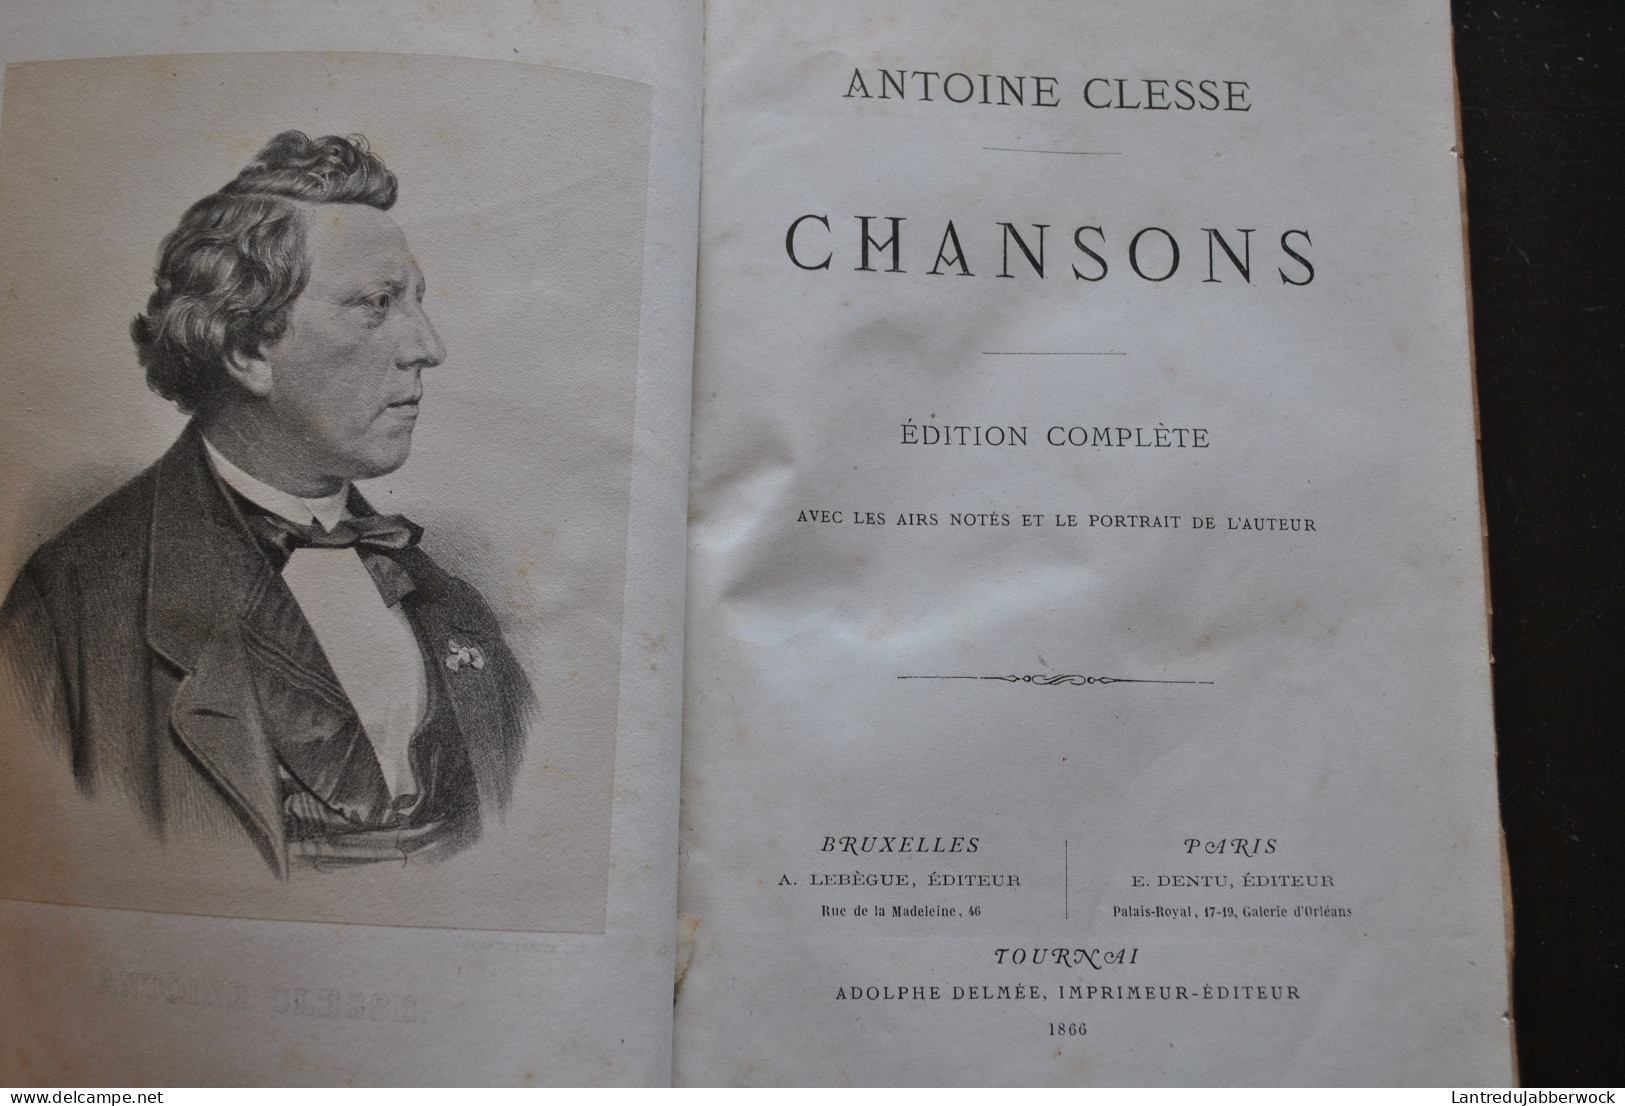 ANTOINE CLESSE CHANSONS Edition Complète Airs Notés 1866 Régionalisme CHANSONNIER BELGIQUE MUSIQUE PATRIMOINE FOLKLORE - Belgium